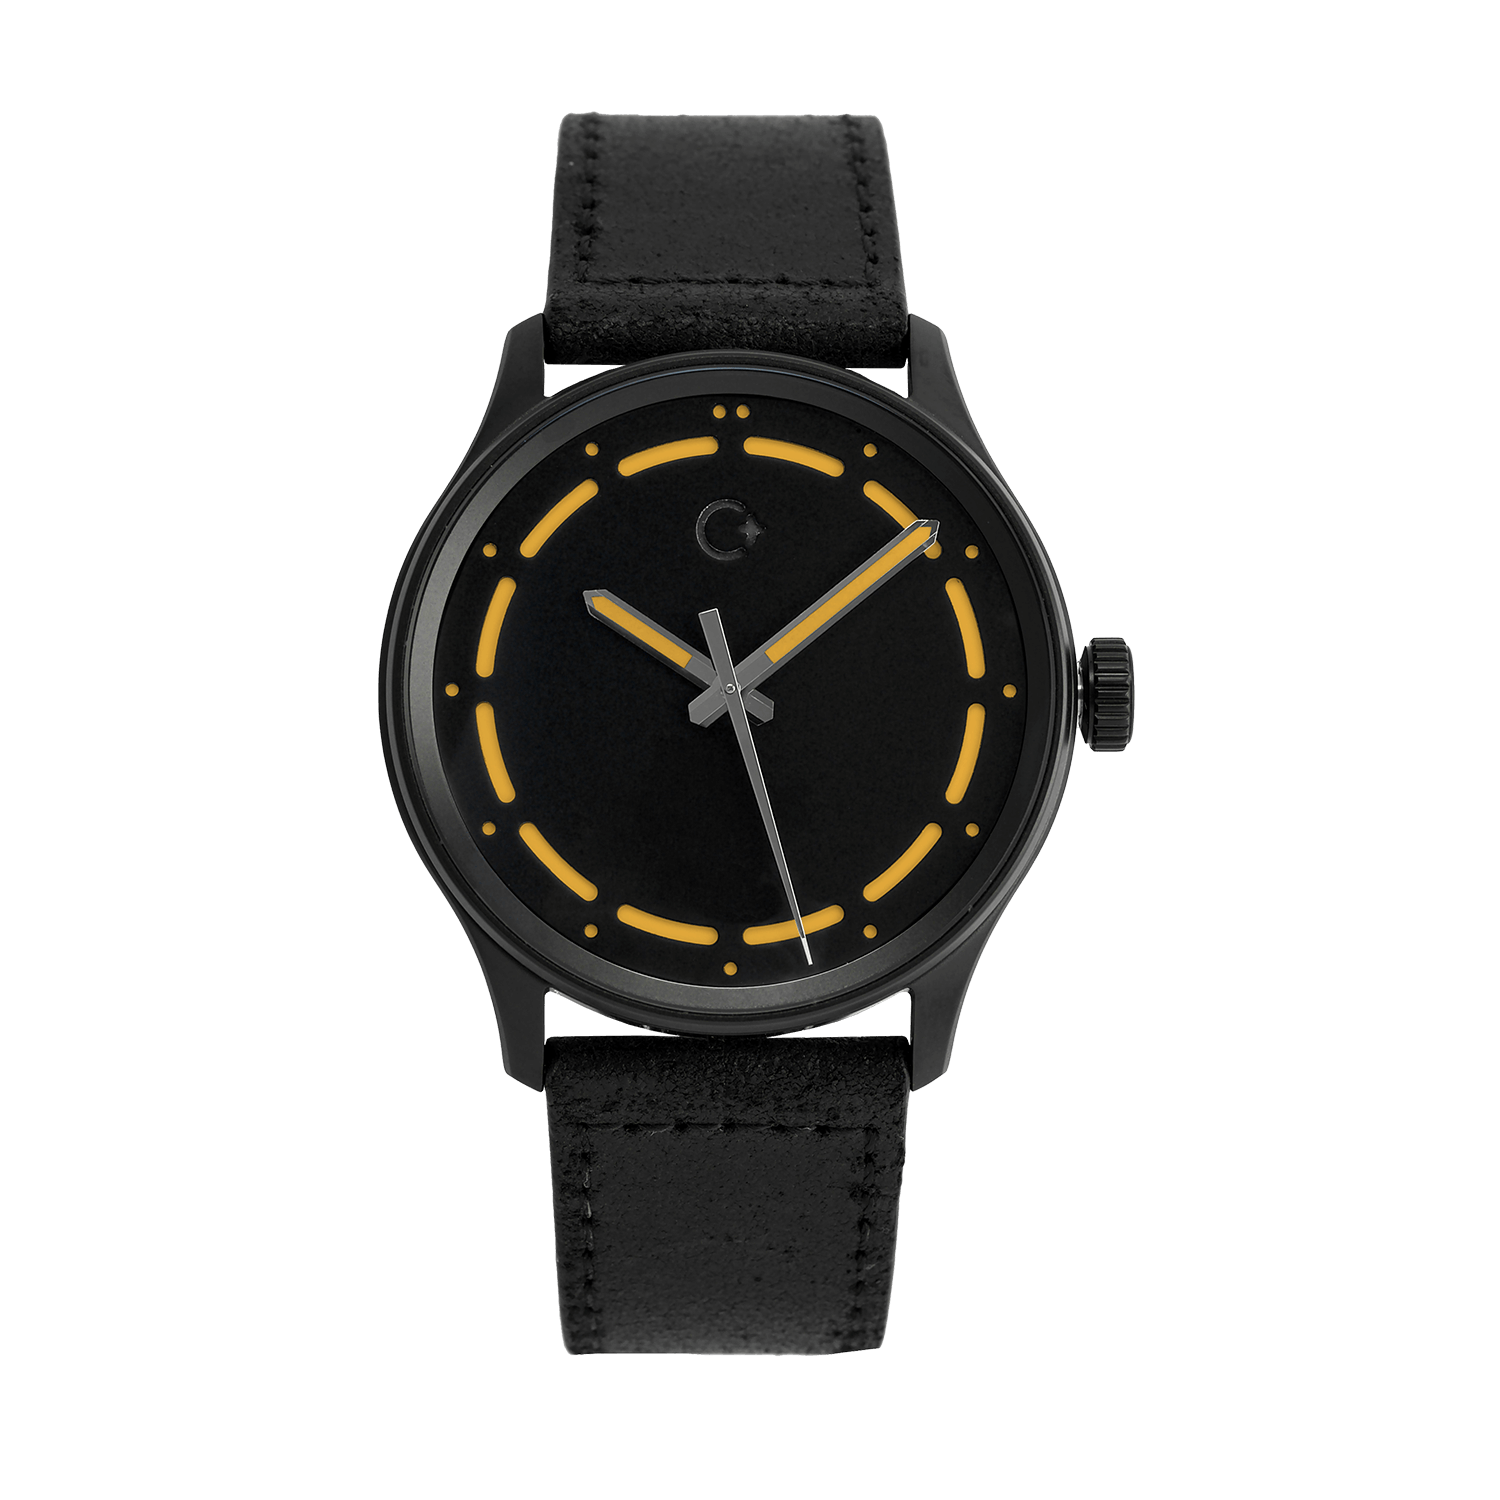 DLC oranžové NanoBlack hodinky od značky Chronotechna, pouzdro 42mm, černý kožený pásek 22mm, rychloupínací stěžejka, vodotěsnost do 100m, Swiss made